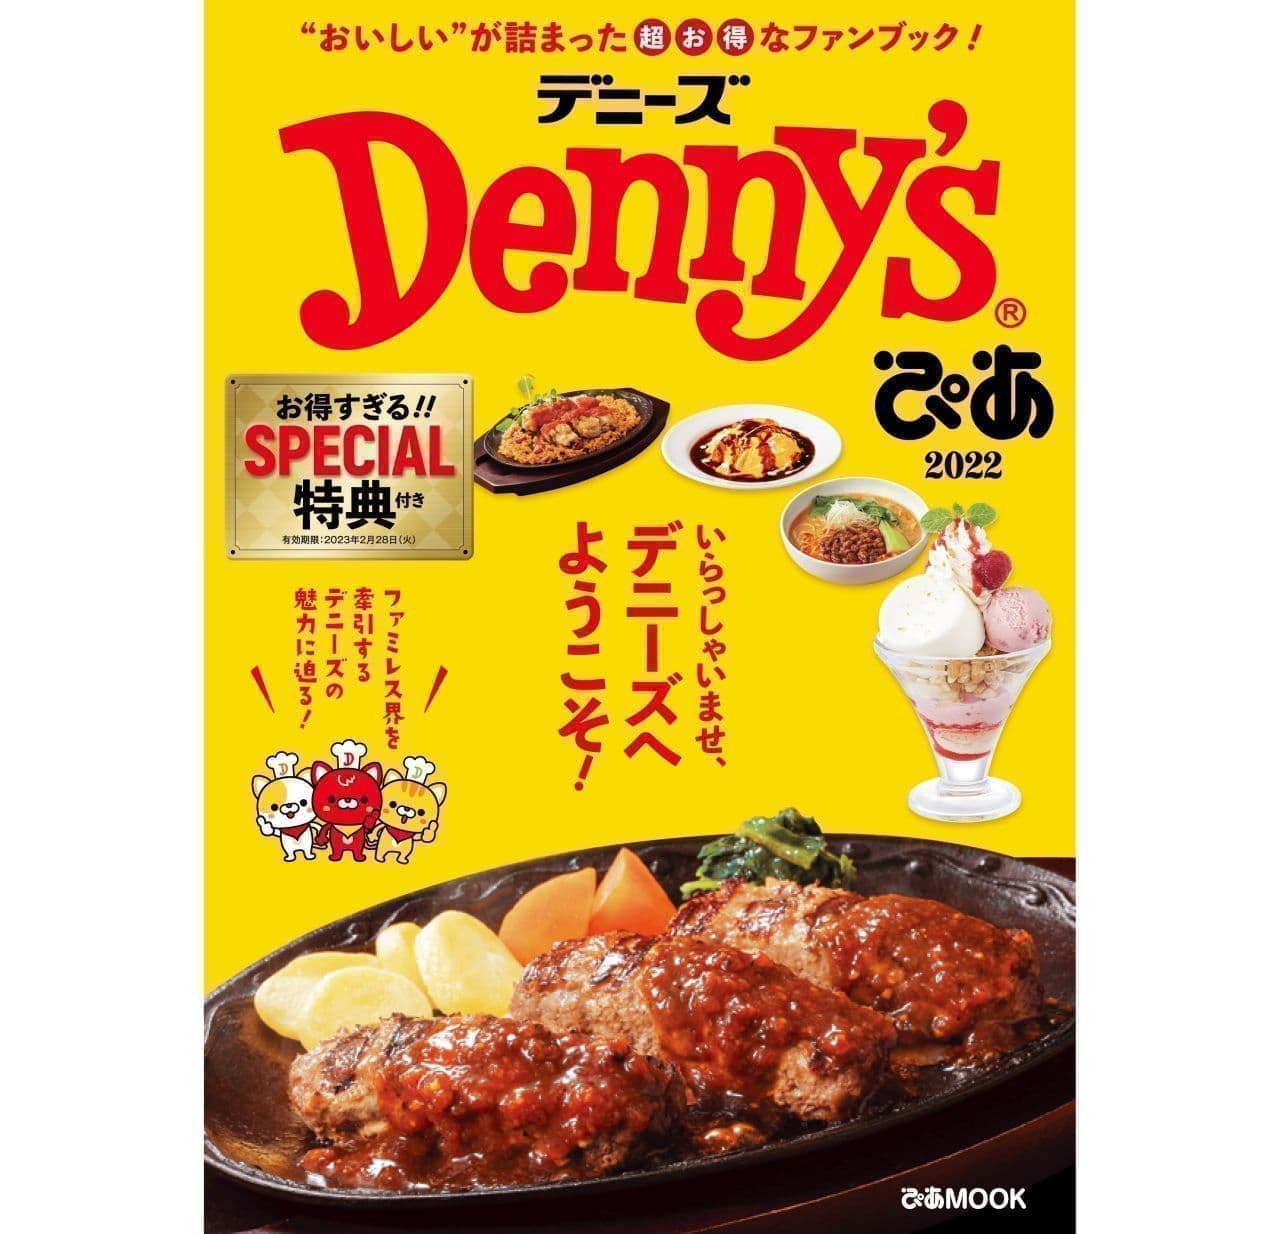 デニーズ ファンブック「Denny'sぴあ 2022」